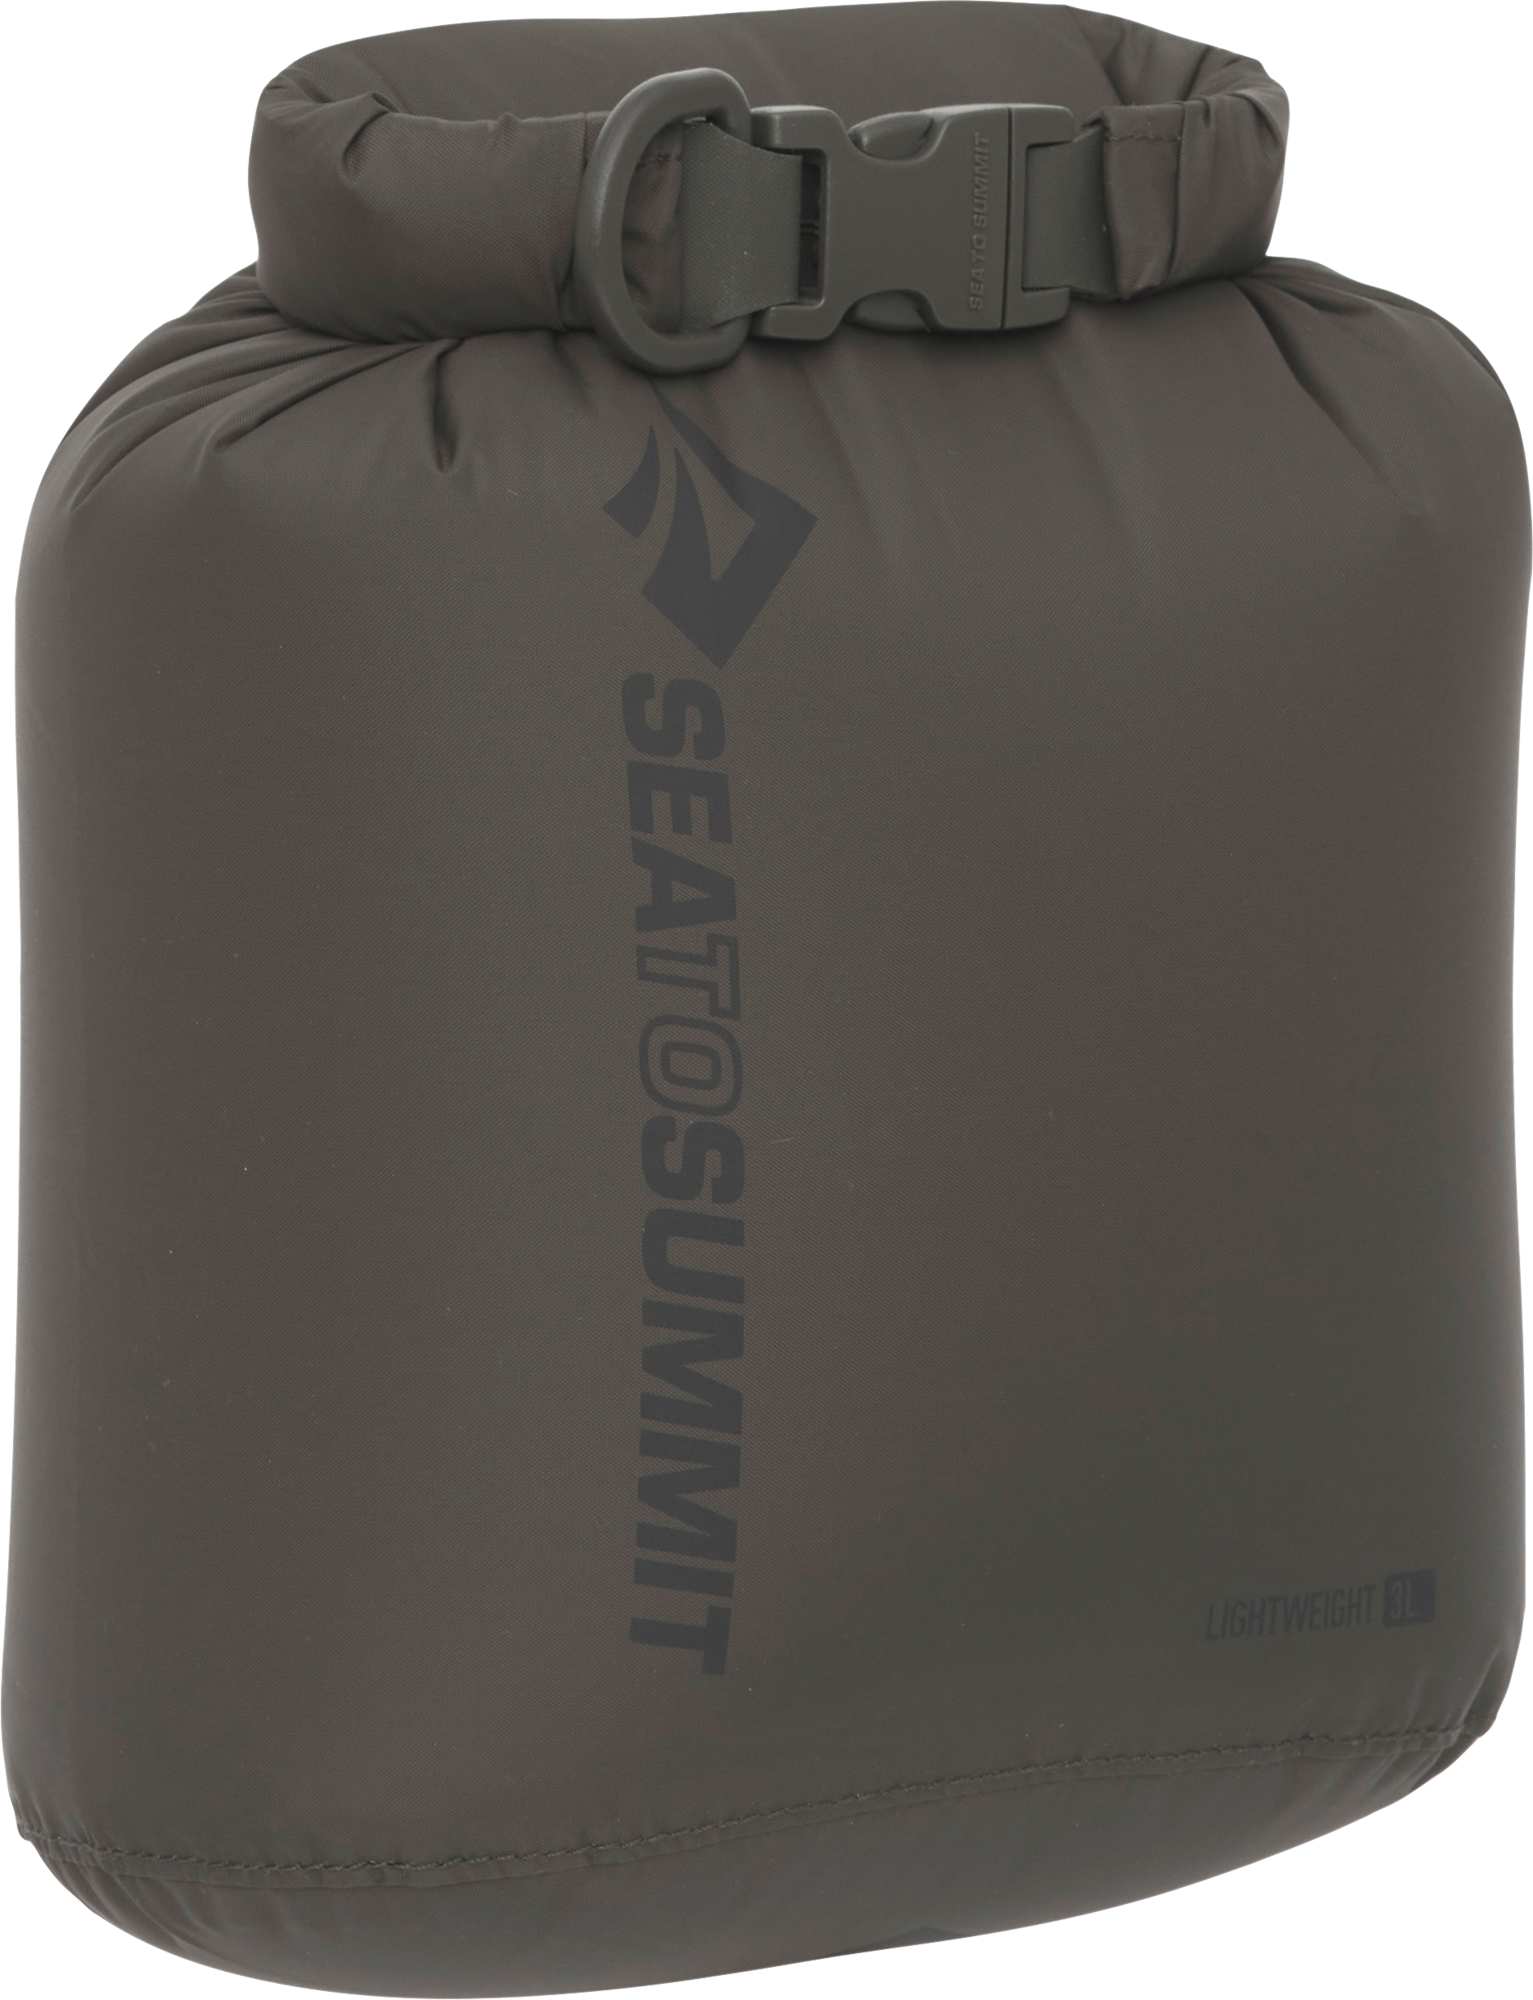 Sea to Summit Lightweight Dry Bag Packsack Beluga 3 Liter